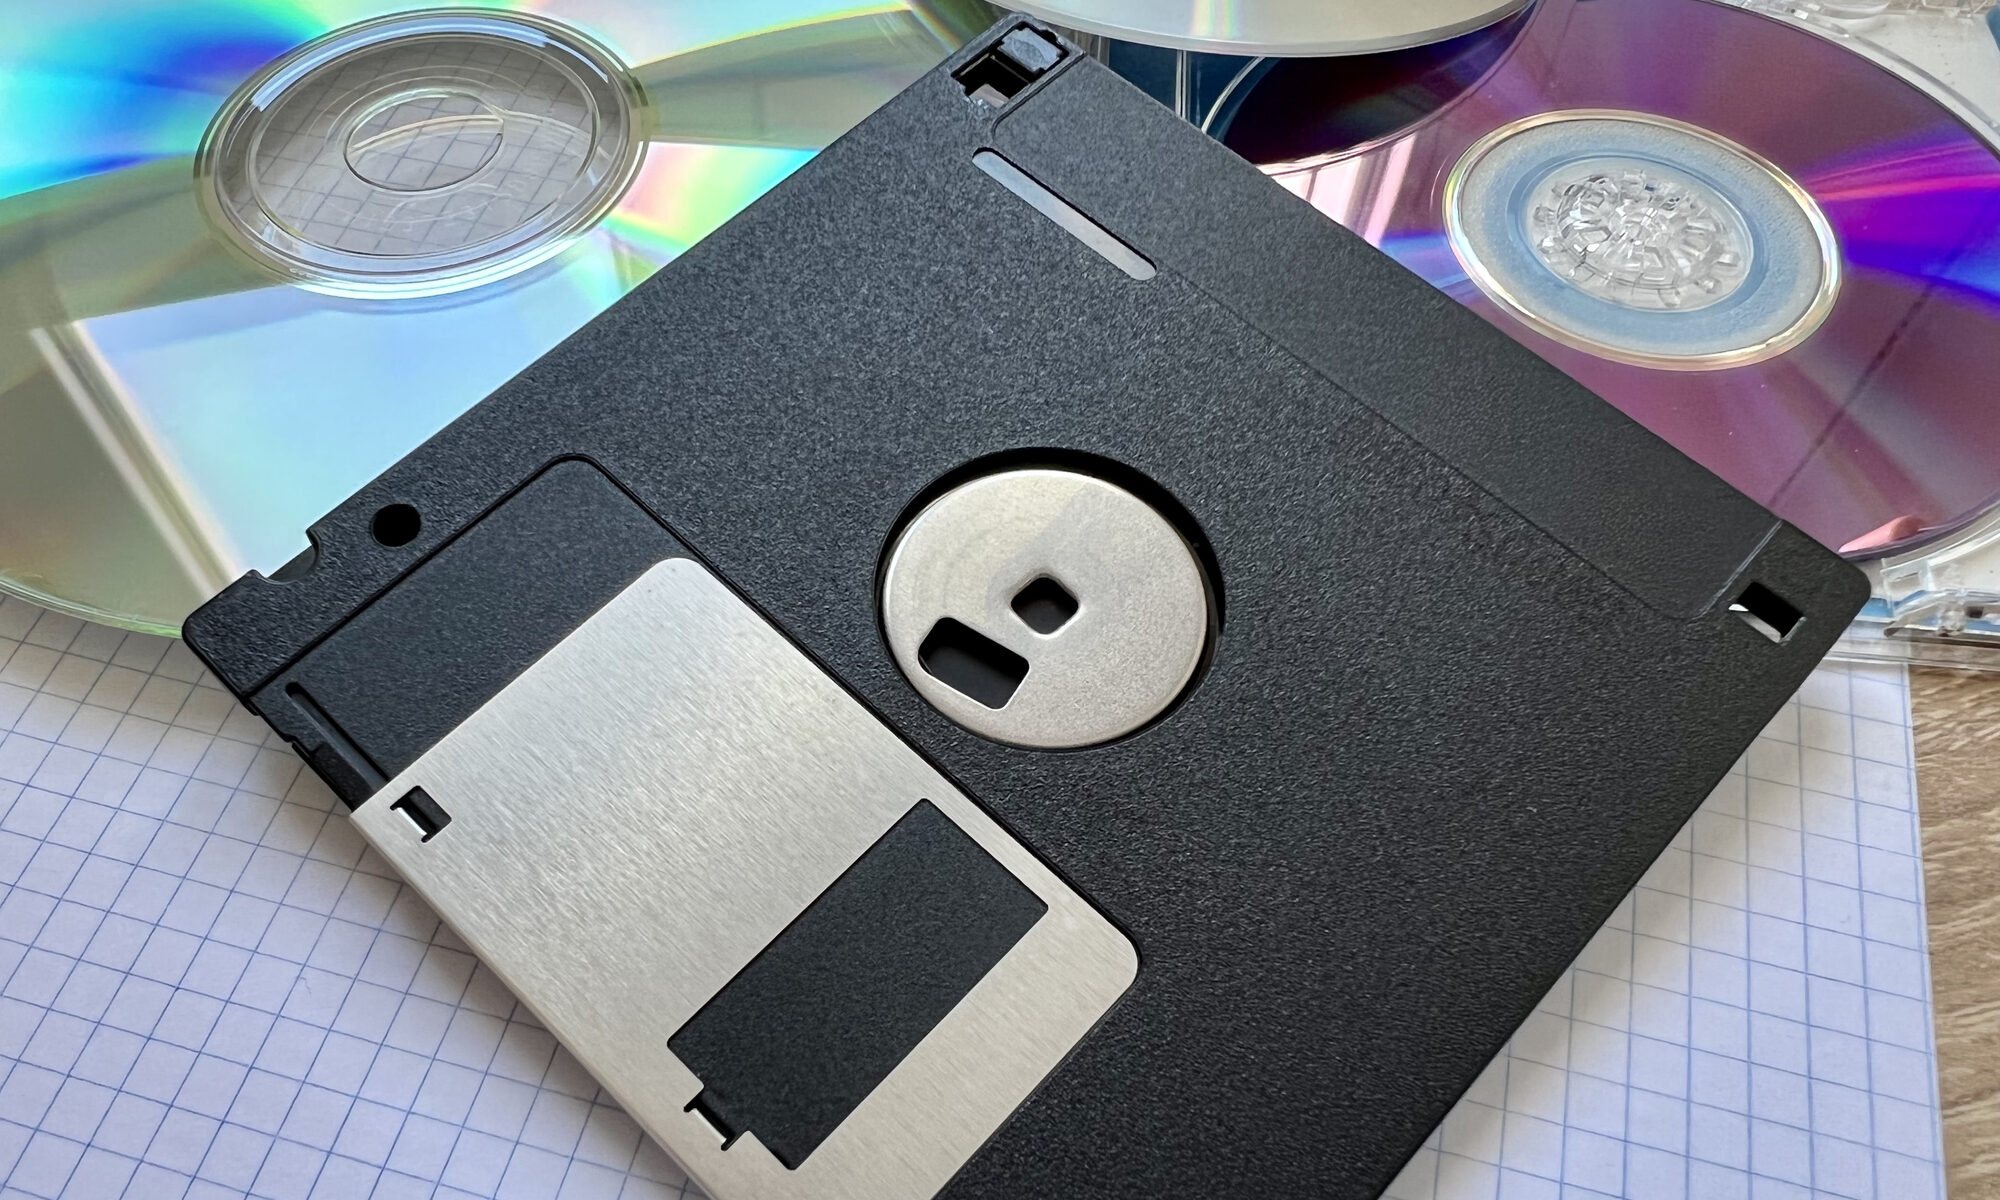 Japón declara la guerra a los disquetes y otros dispositivos obsoletos